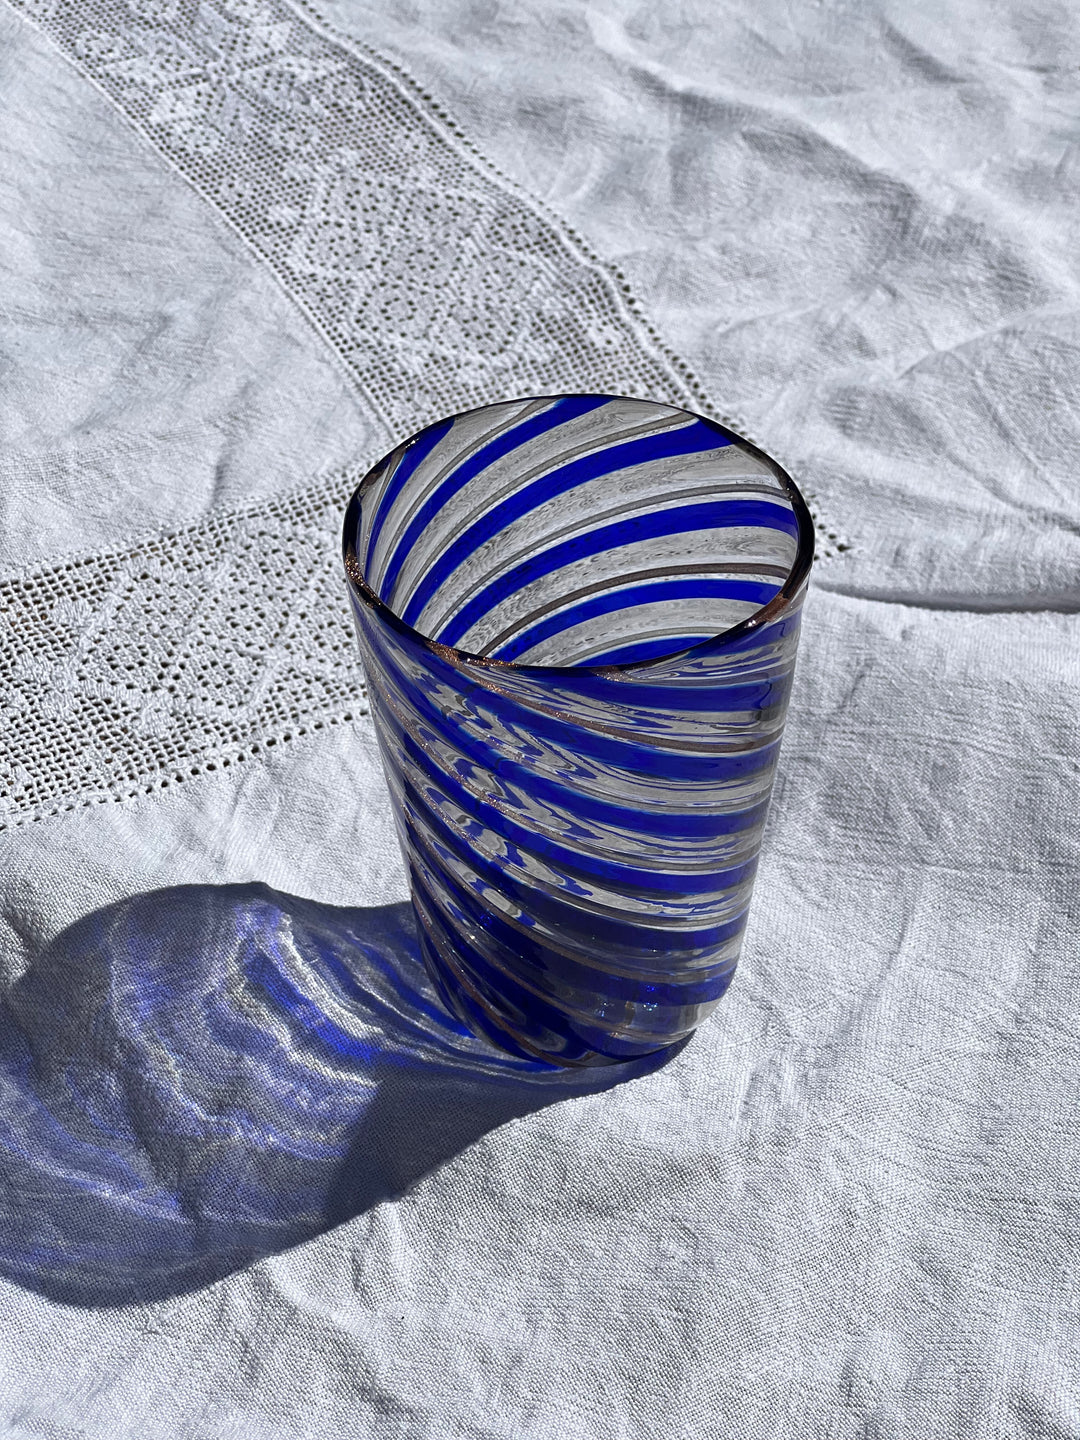 Håndblæst Murano Glas med Swirlmønster i Mørkeblå og Rosa Murano